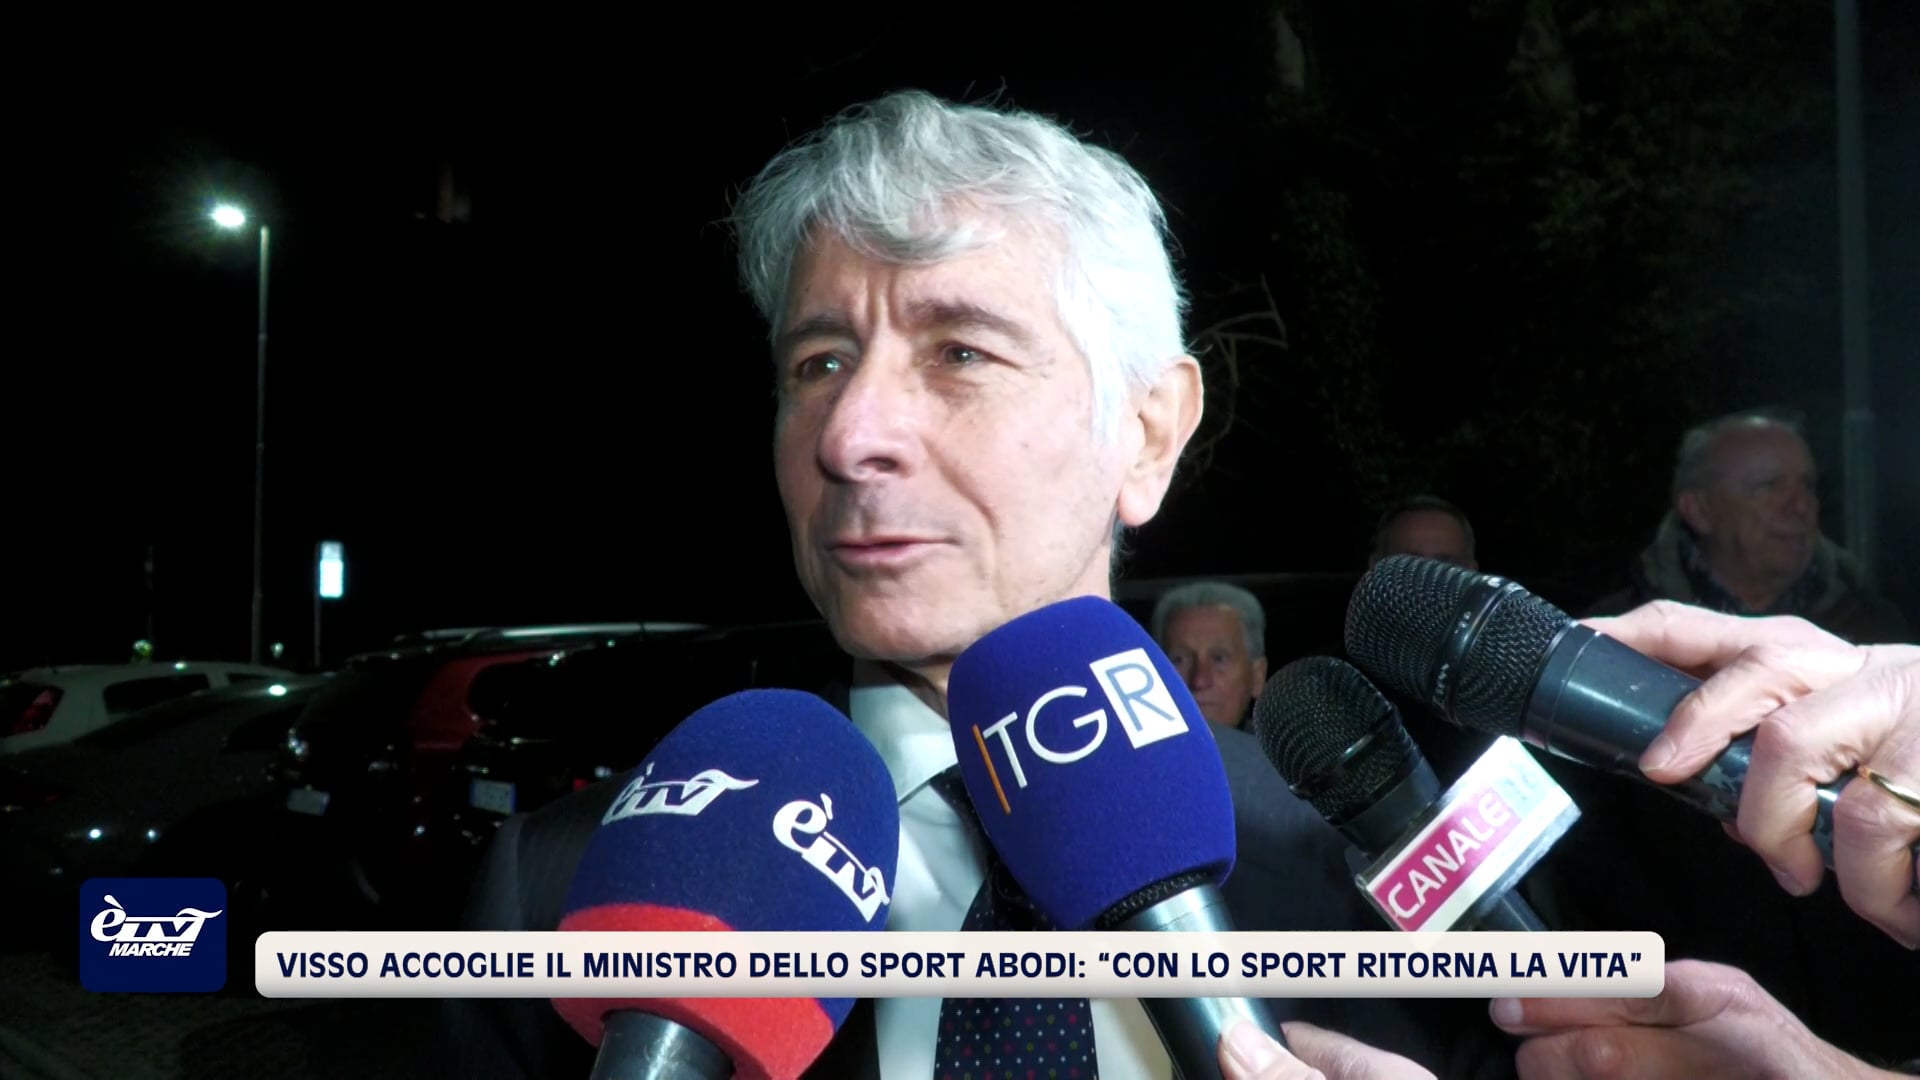 Visso accoglie il Ministro dello Sport Abodi: “Con lo sport ritorna la vita” - VIDEO